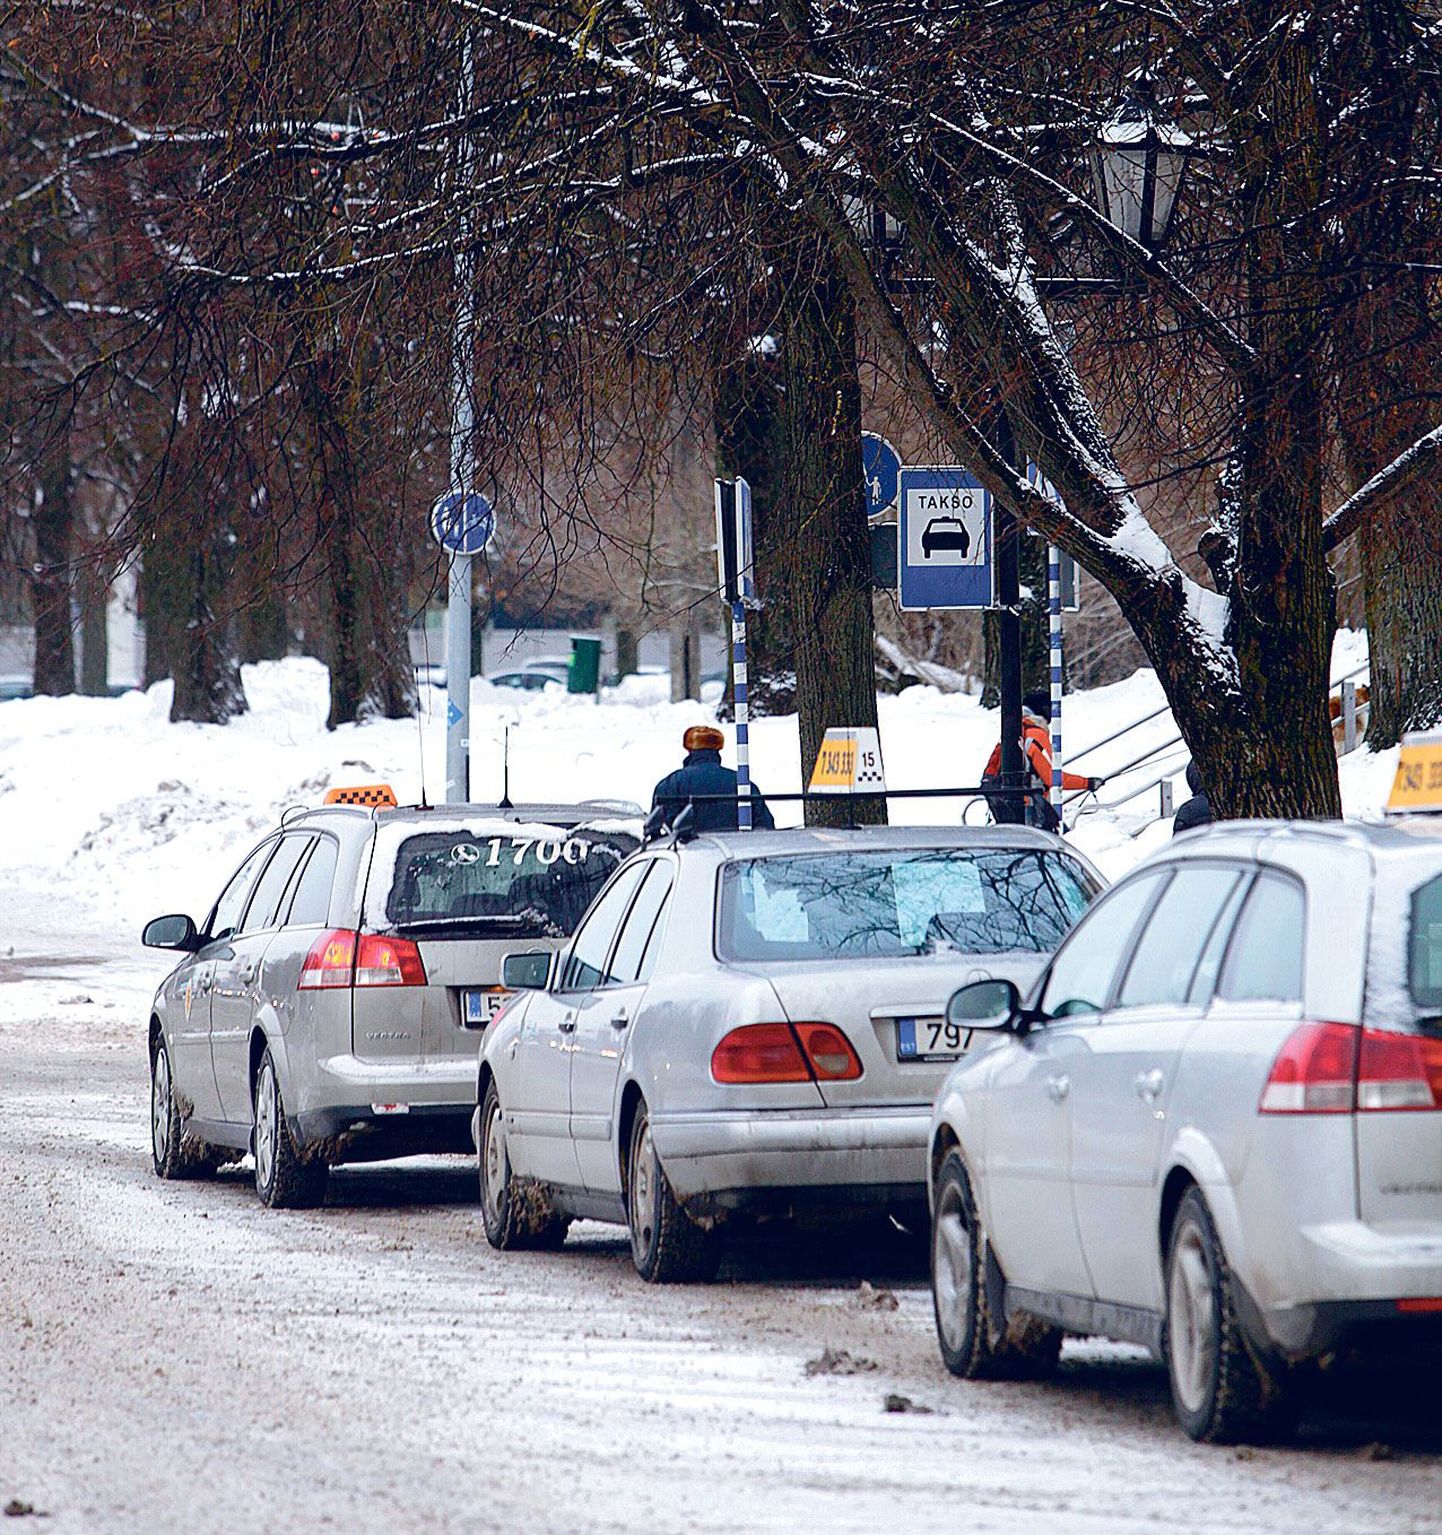 Tartu taksofirmad tõstavad tasapisi hinda. Möödunud nädalal kergitasid sõidutasu Takso Üks ja Linna Takso.